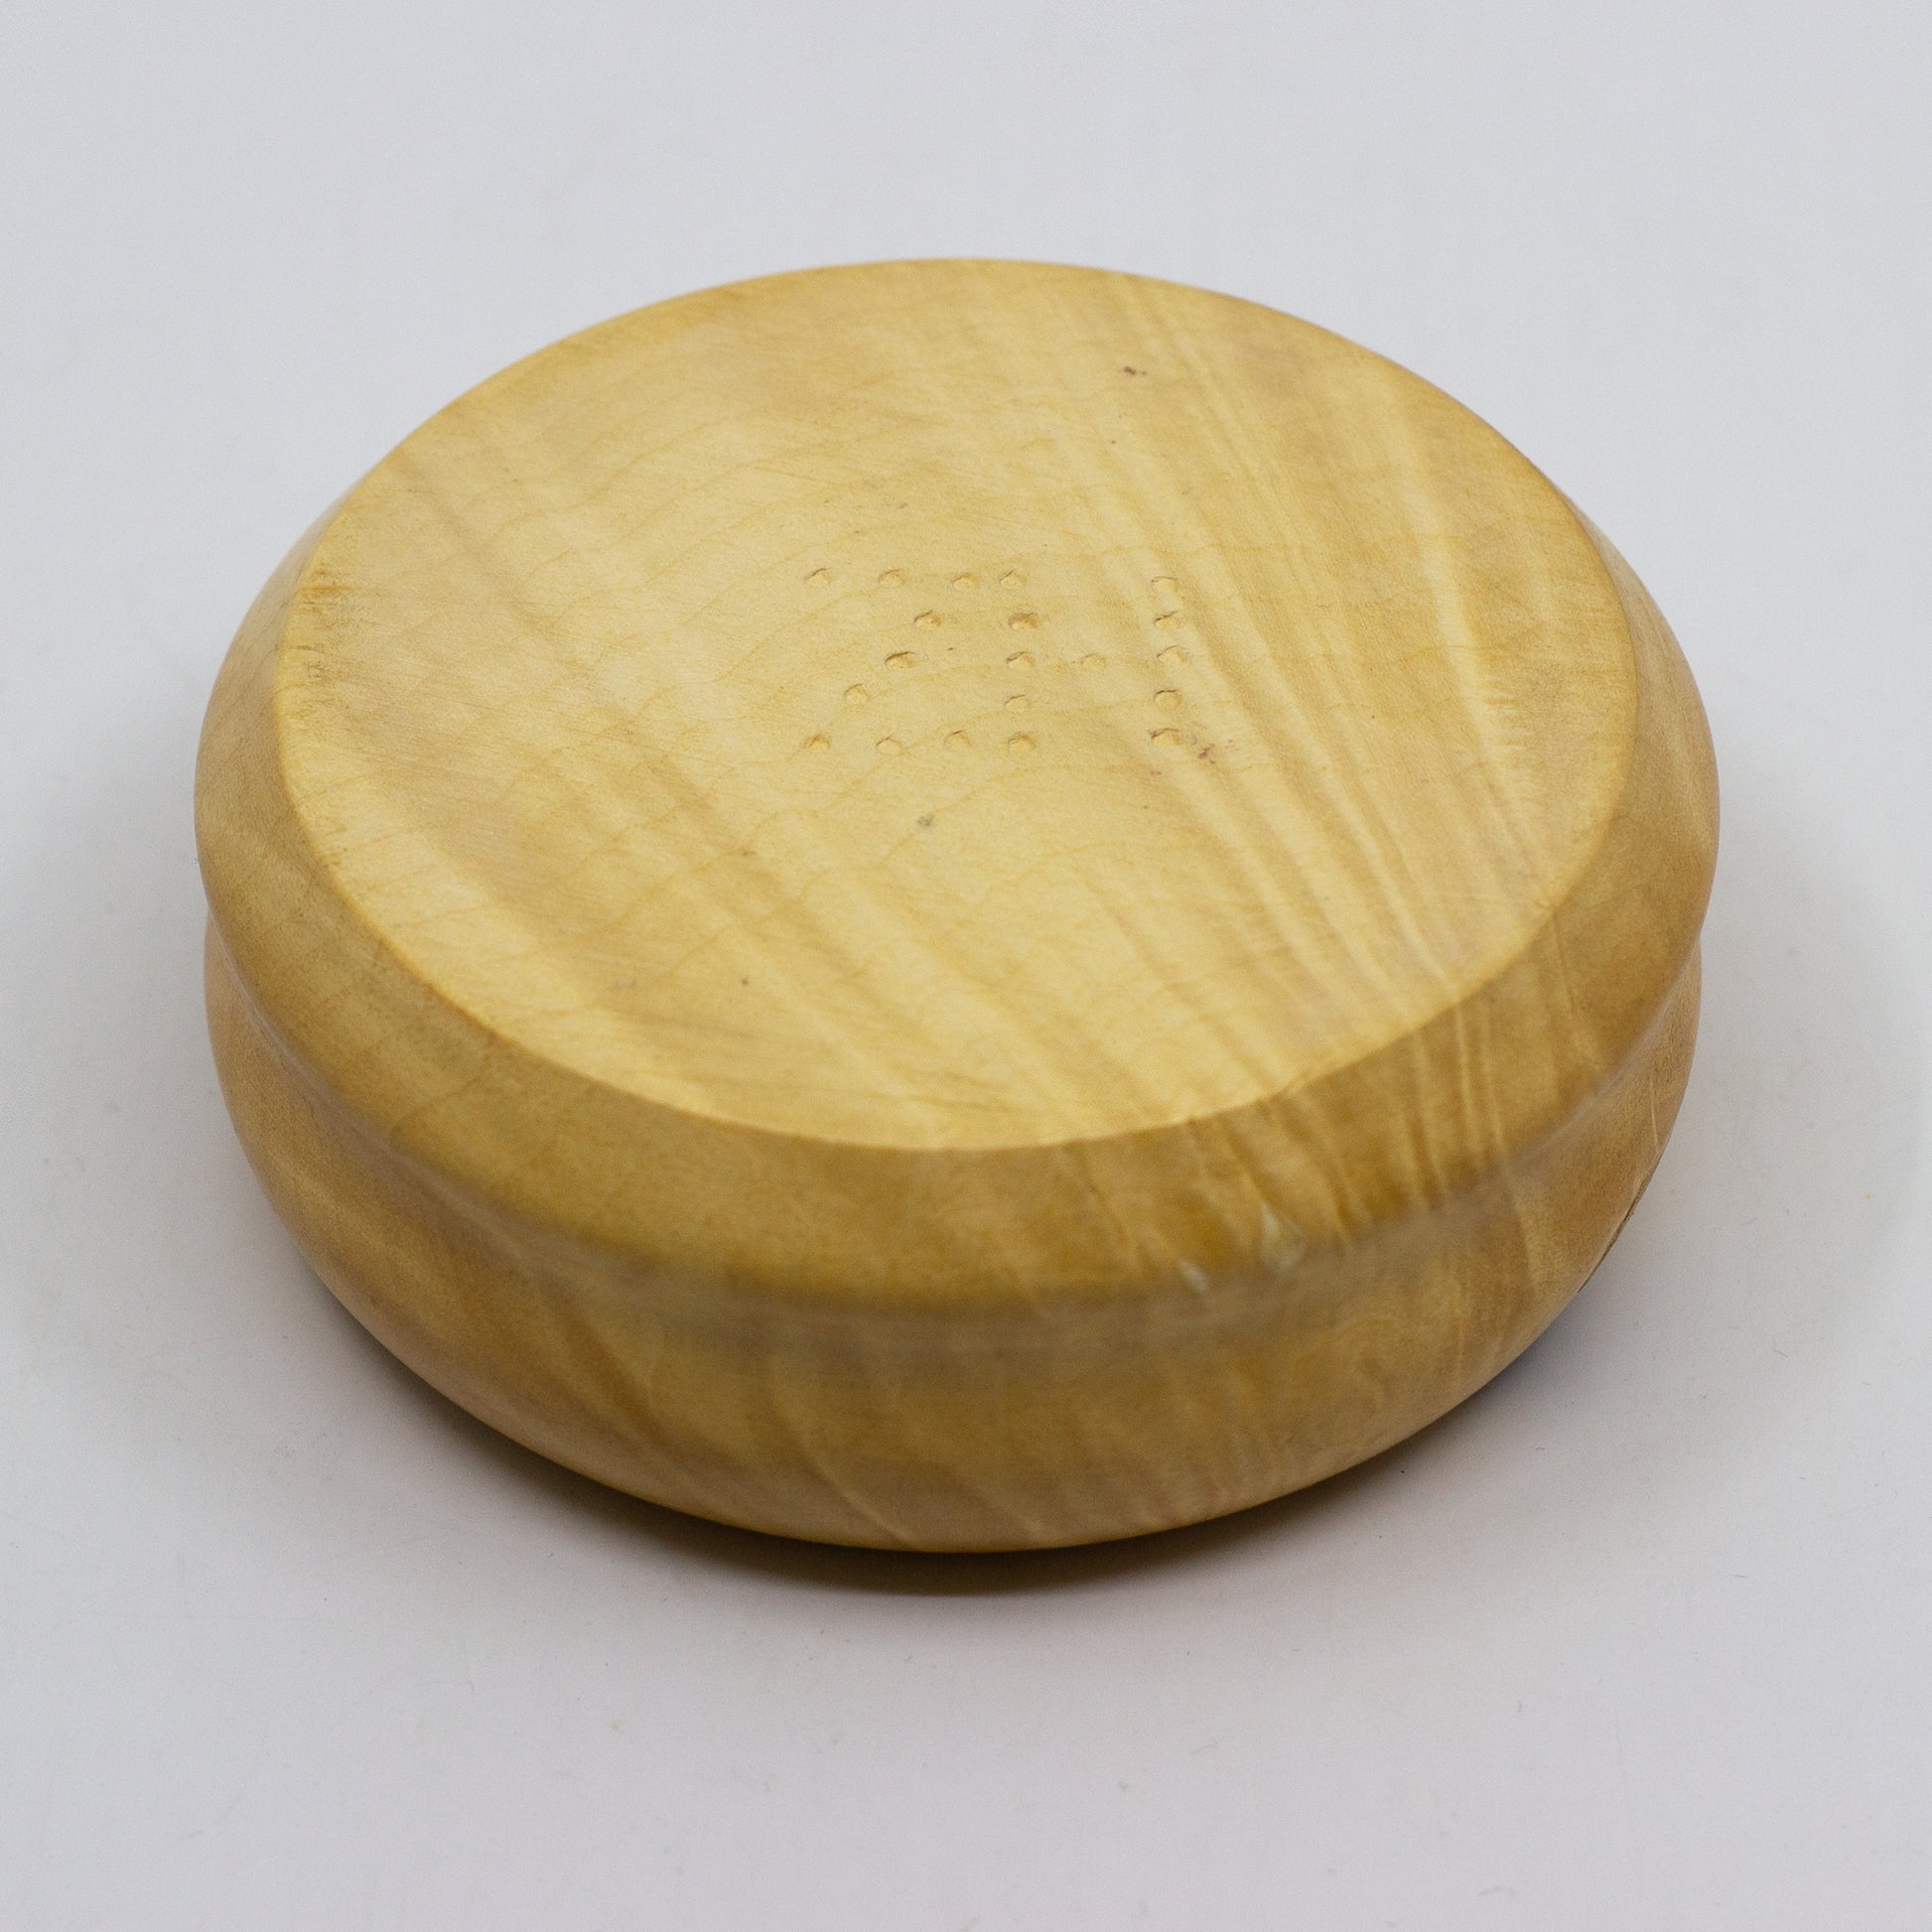 Bottom of light tan wooden bowl